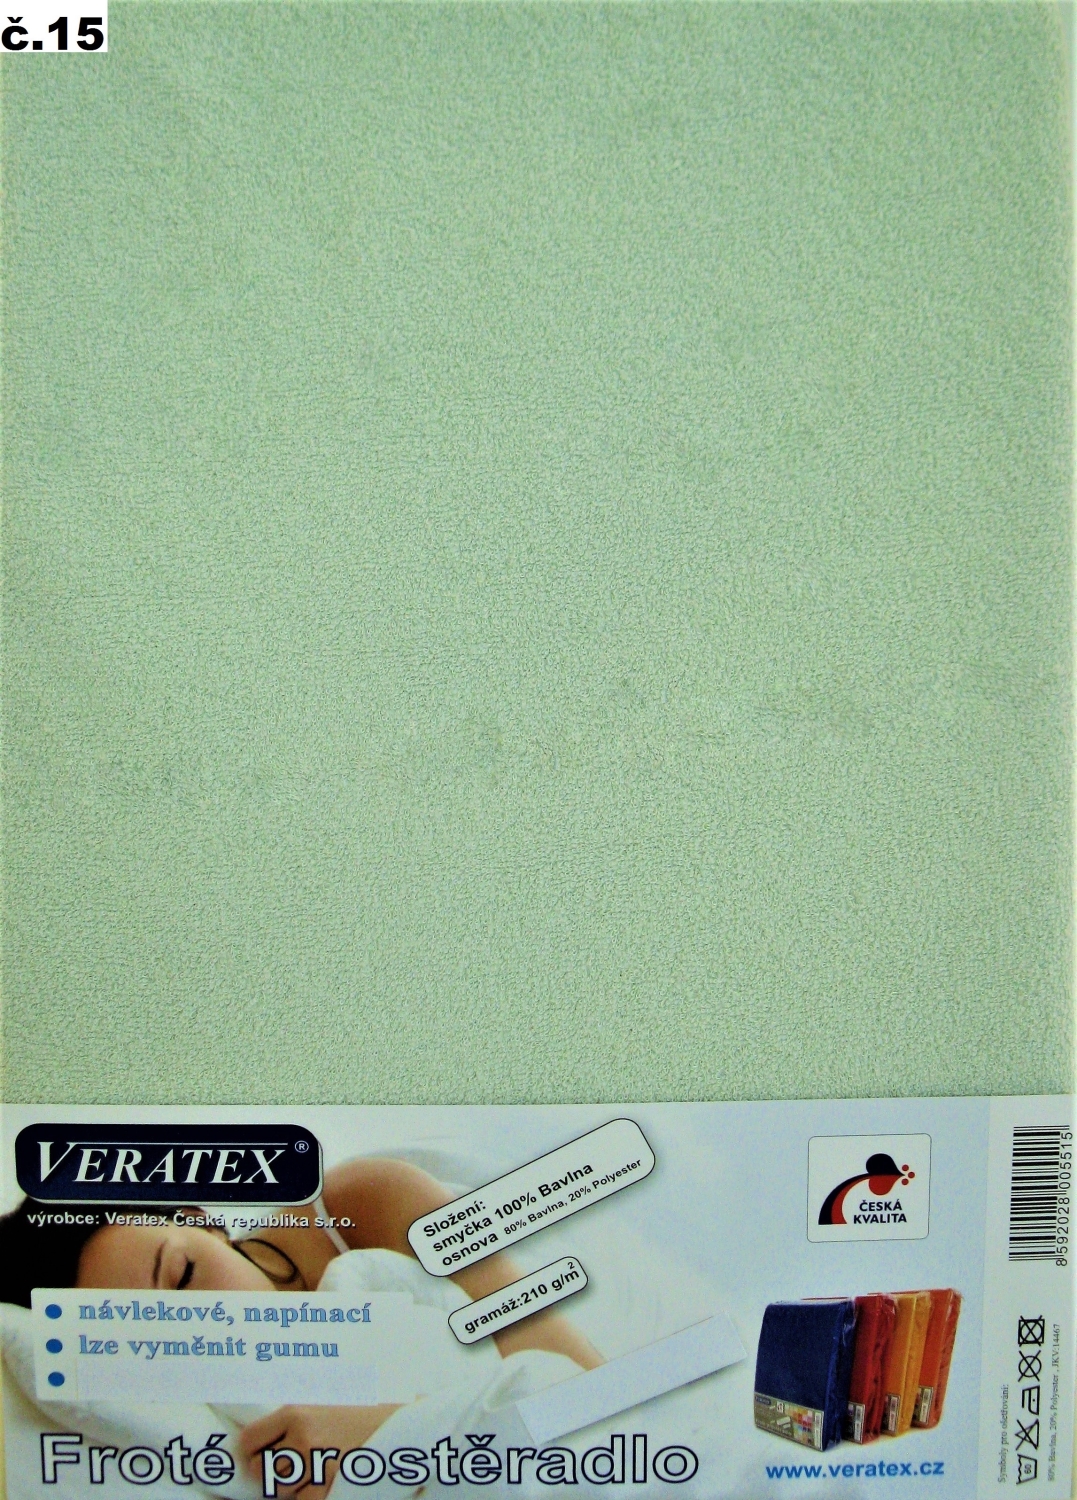 Veratex Froté prostěradlo jednolůžko 90x200/16 cm (č.15 sv.zelená)